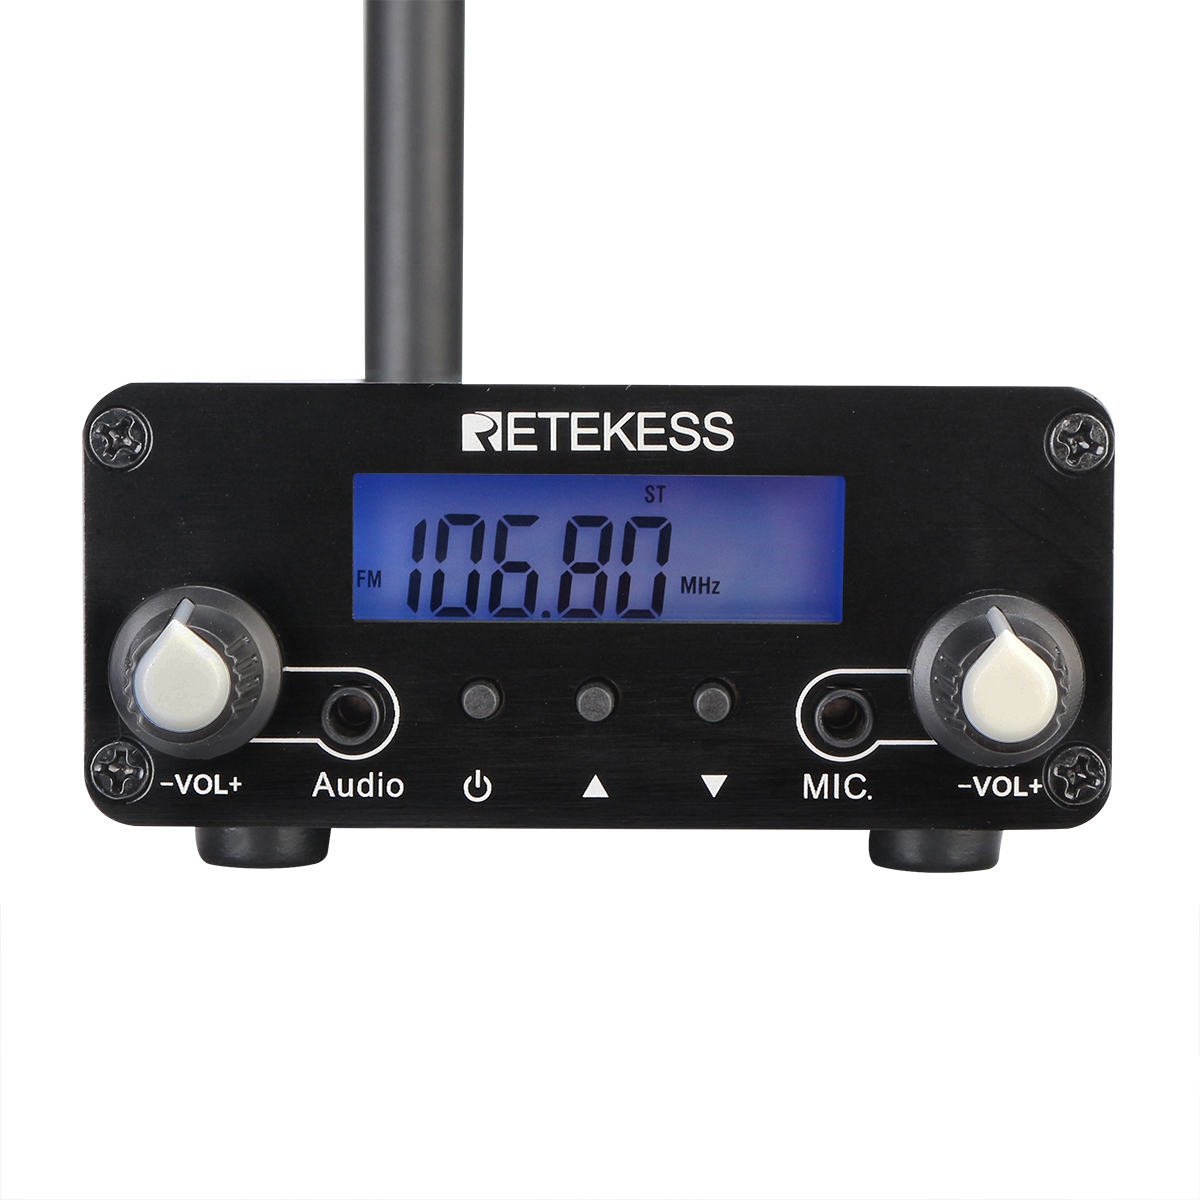 Retekess-TR508-FM-Transmitter-For-Drive-in-Church-FM-Transmitter-Wireless-Broadcast-Stereo-Station-L-1681579-10